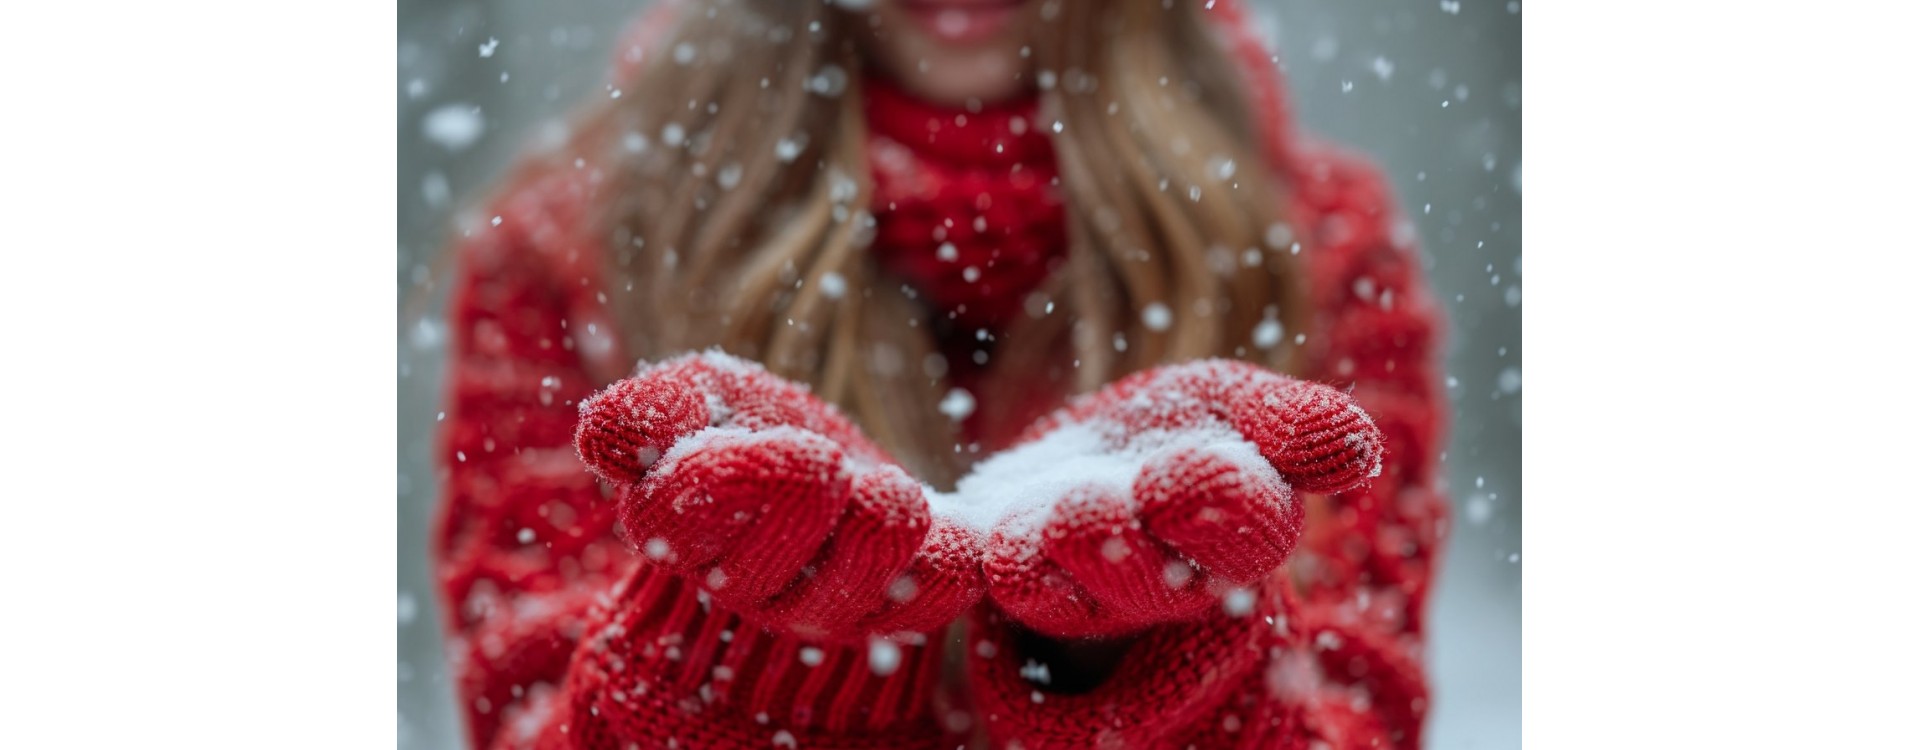 Astuce pour ne plus avoir les mains froides : Les secrets pour garder la chaleur